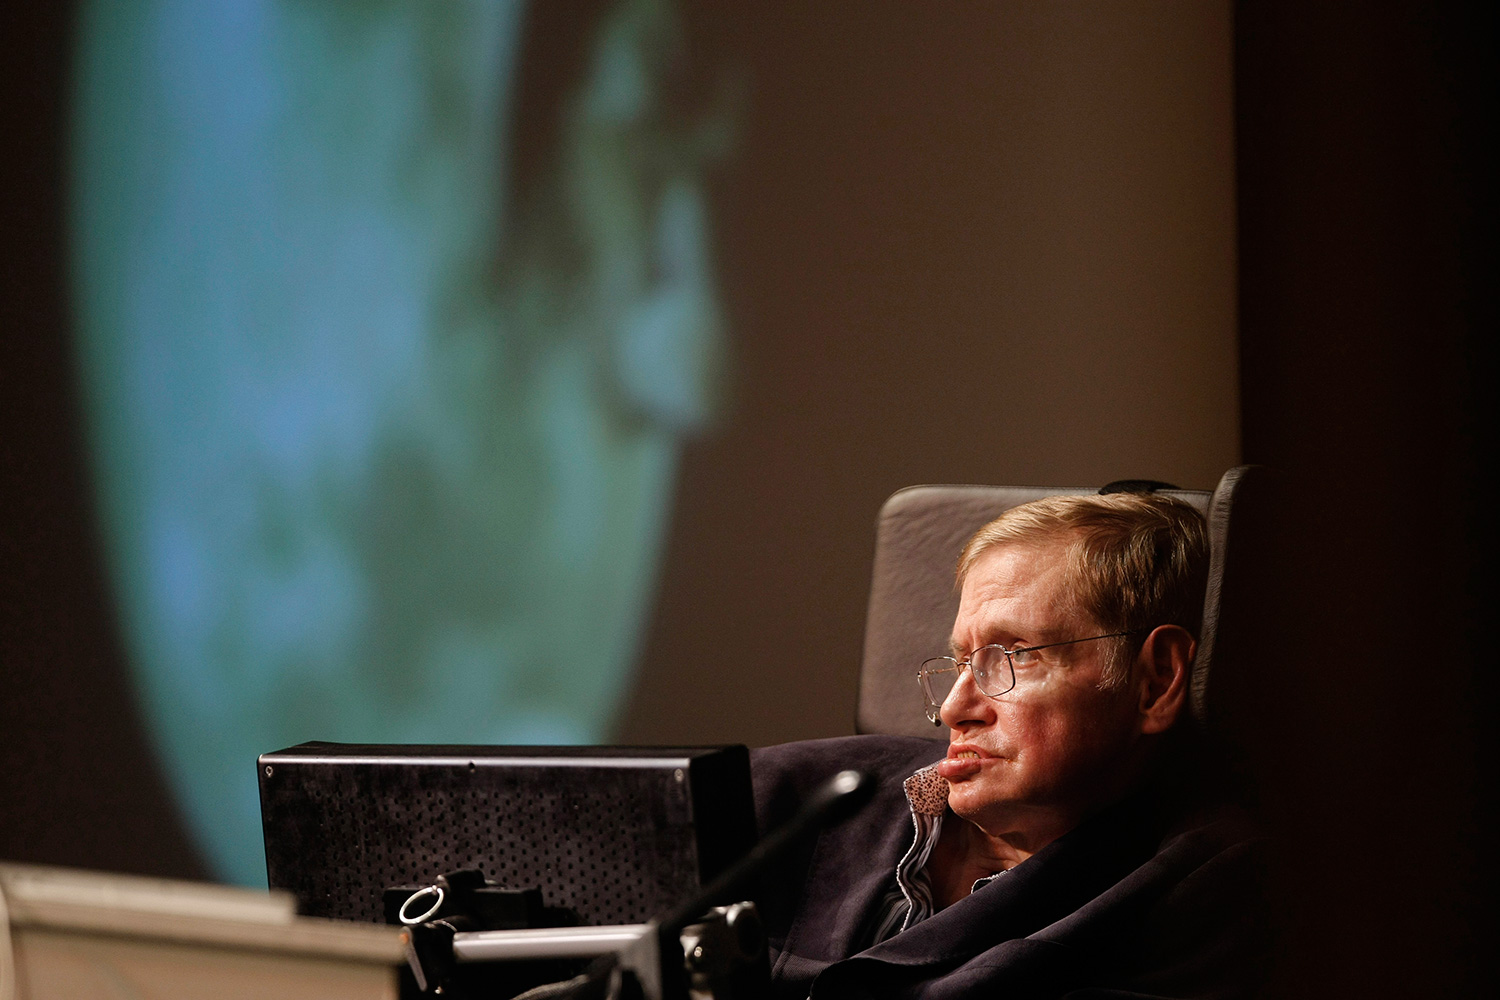 Una mujer que amenazaba de muerte a Stephen Hawking ha sido detenida en Tenerife